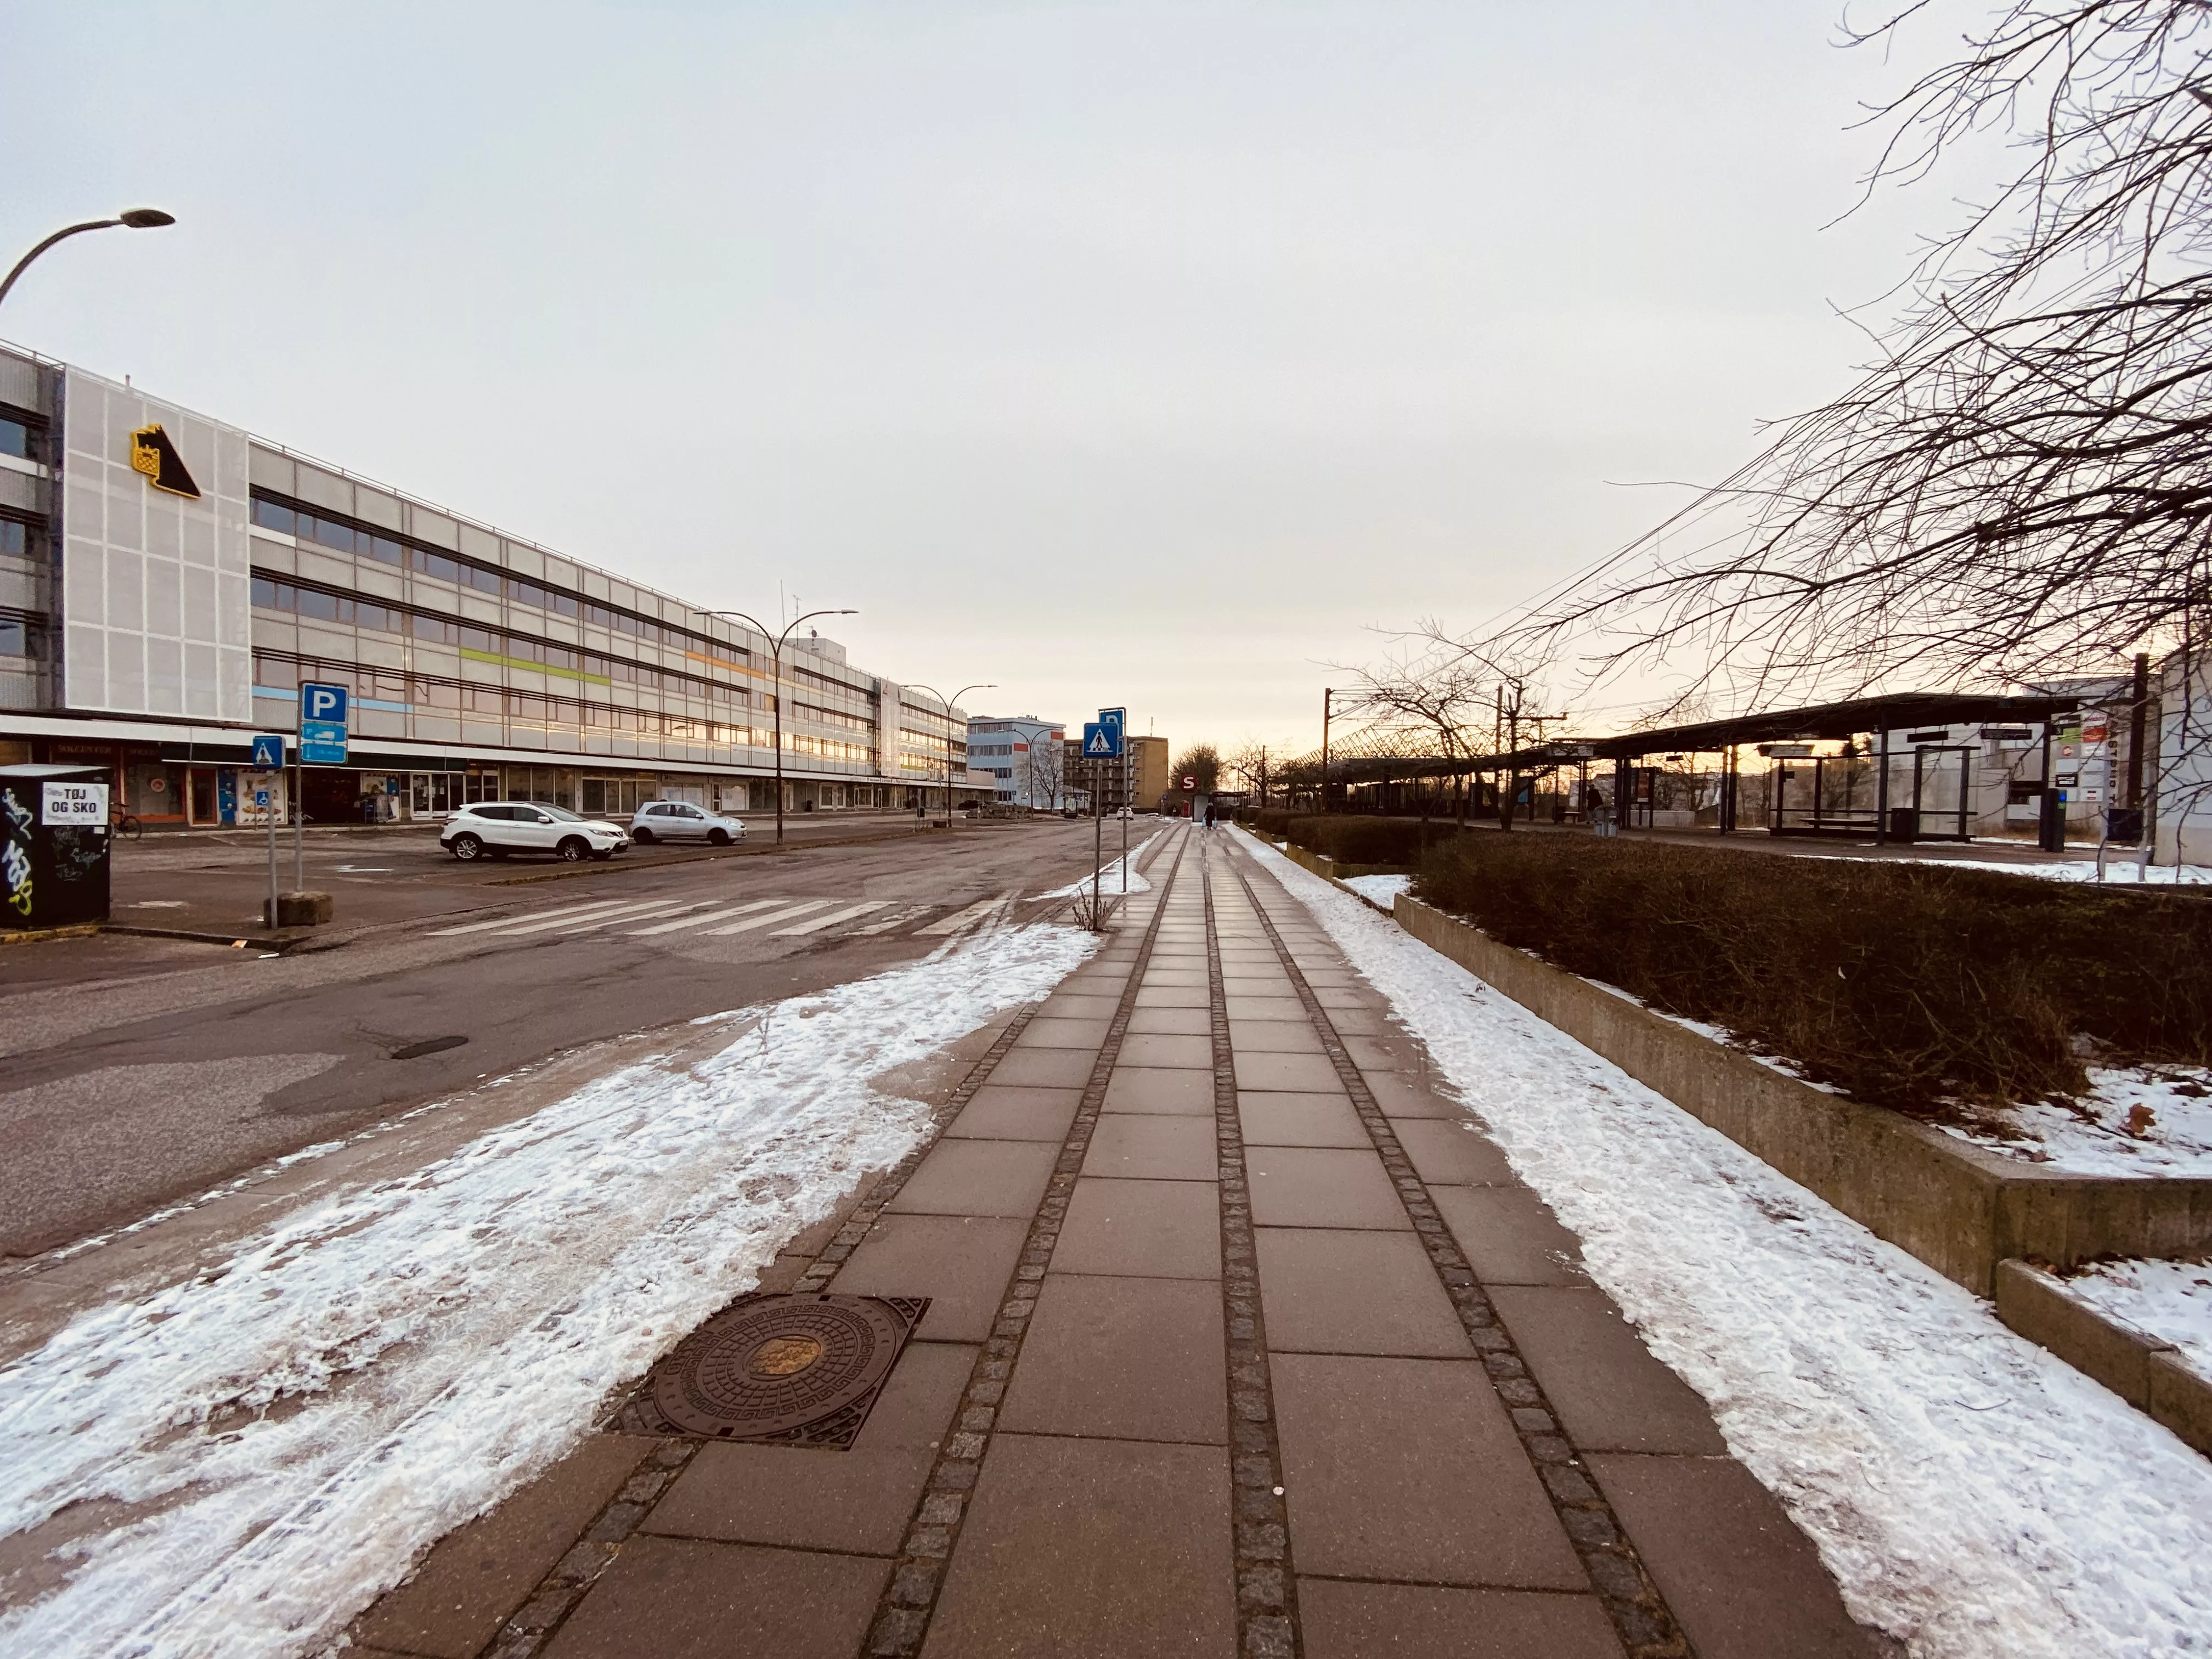 Billede af Tåstrup Station - Station er nedrevet, men Tåstrup Station har ligget her.